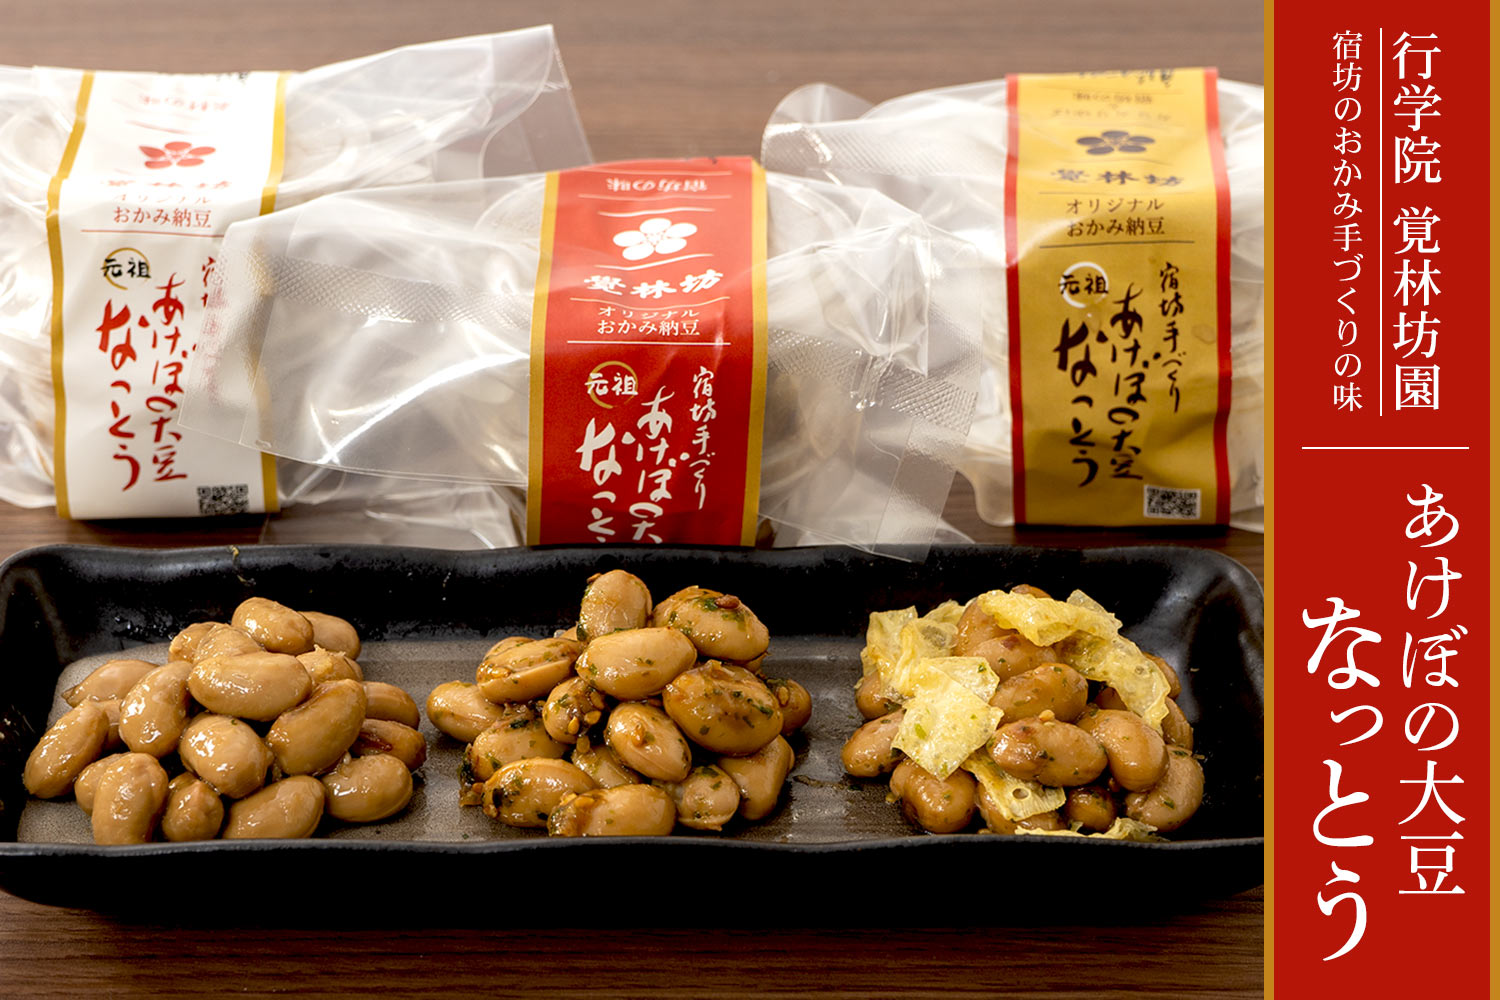 行学院 覚林坊 宿坊のおかみ手づくりの味 あけぼの大豆納豆